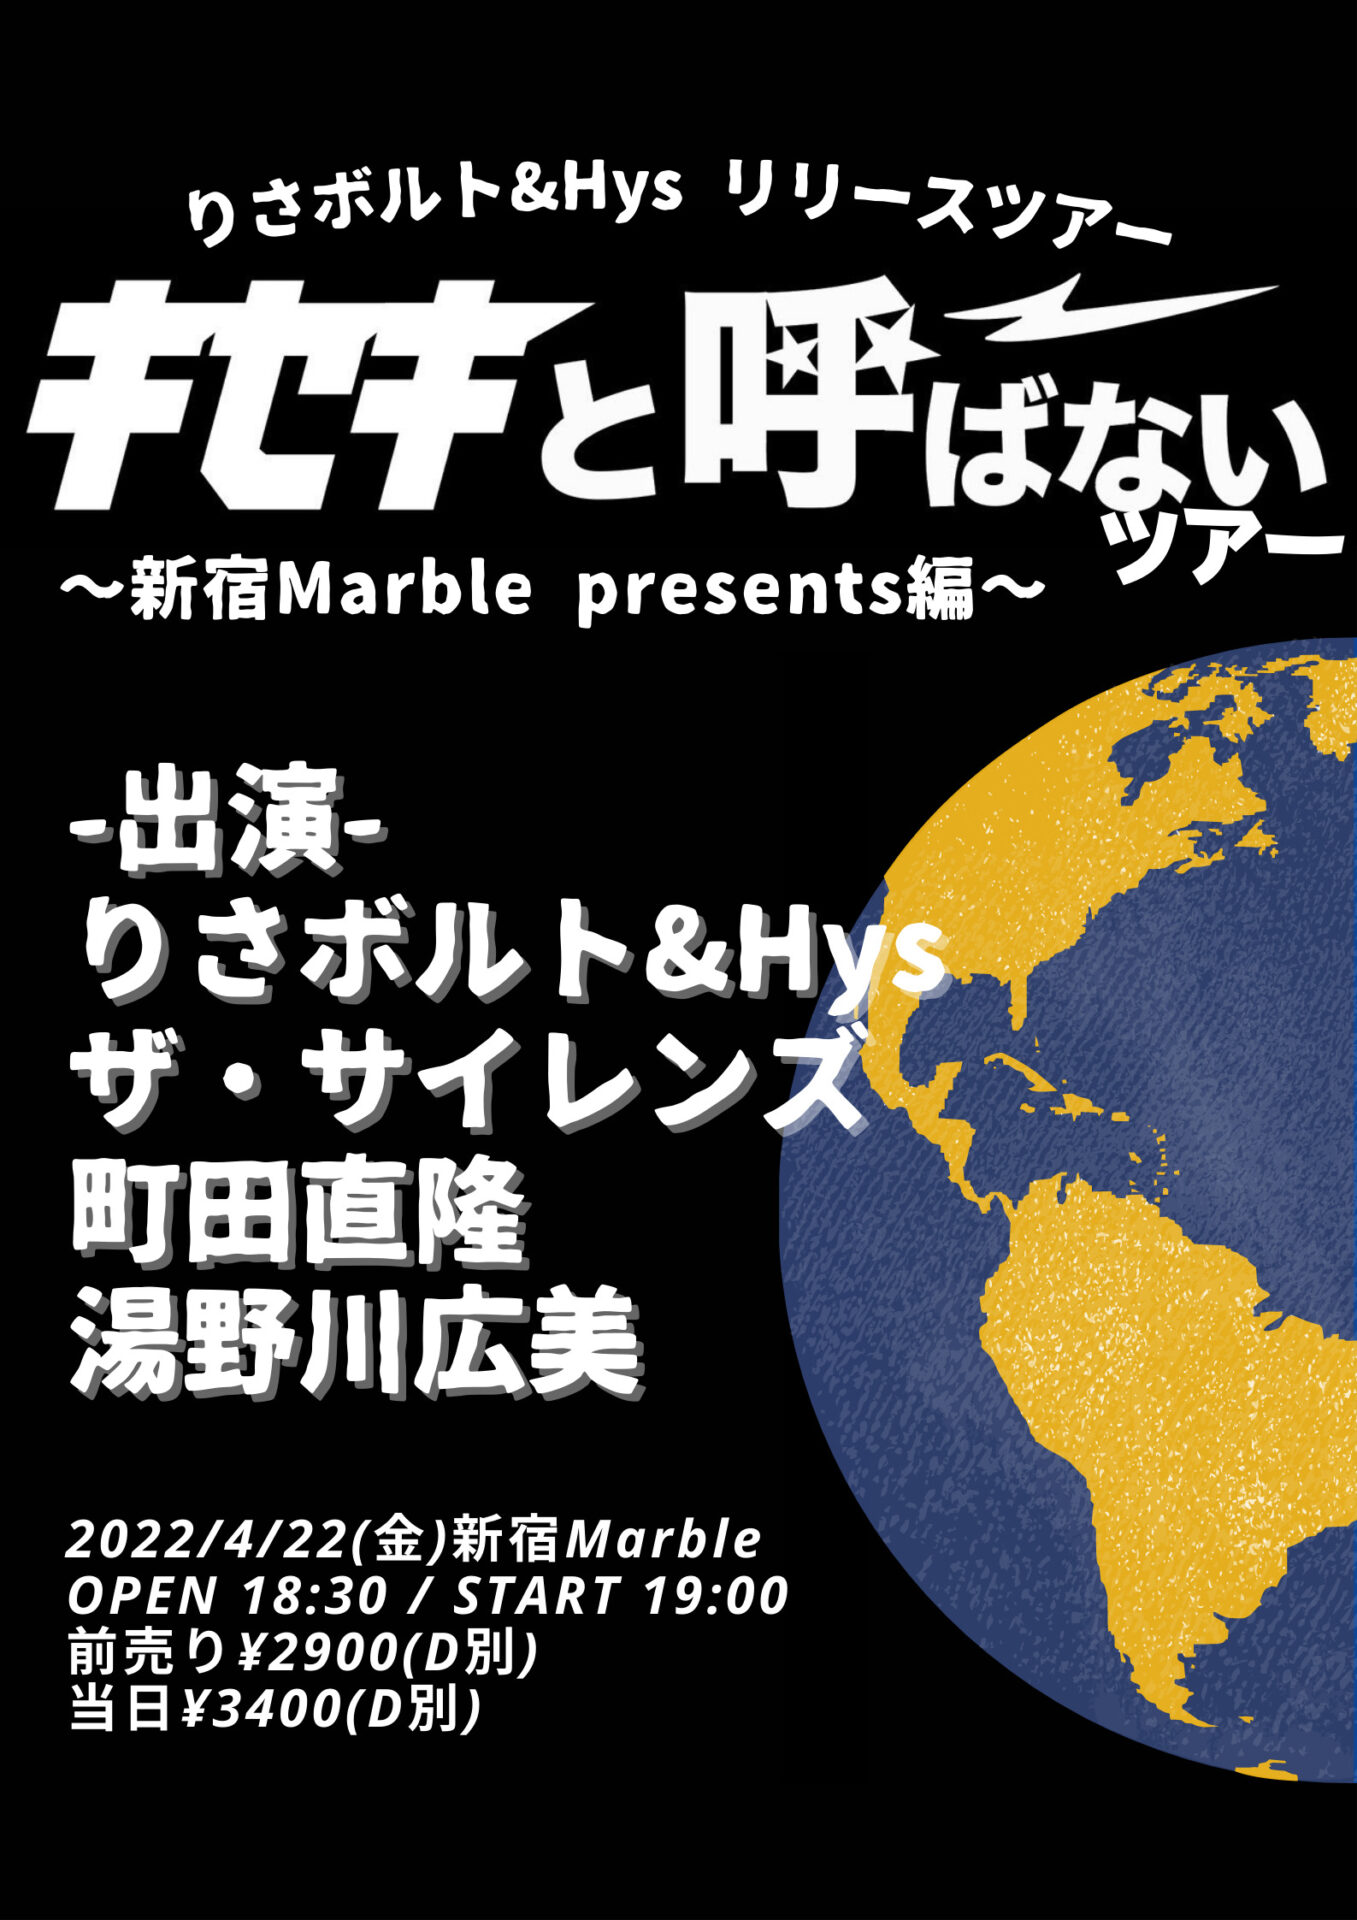 りさボルト&Hys リリースツアー「キセキと呼ばないツアー〜新宿Marble presents編〜」